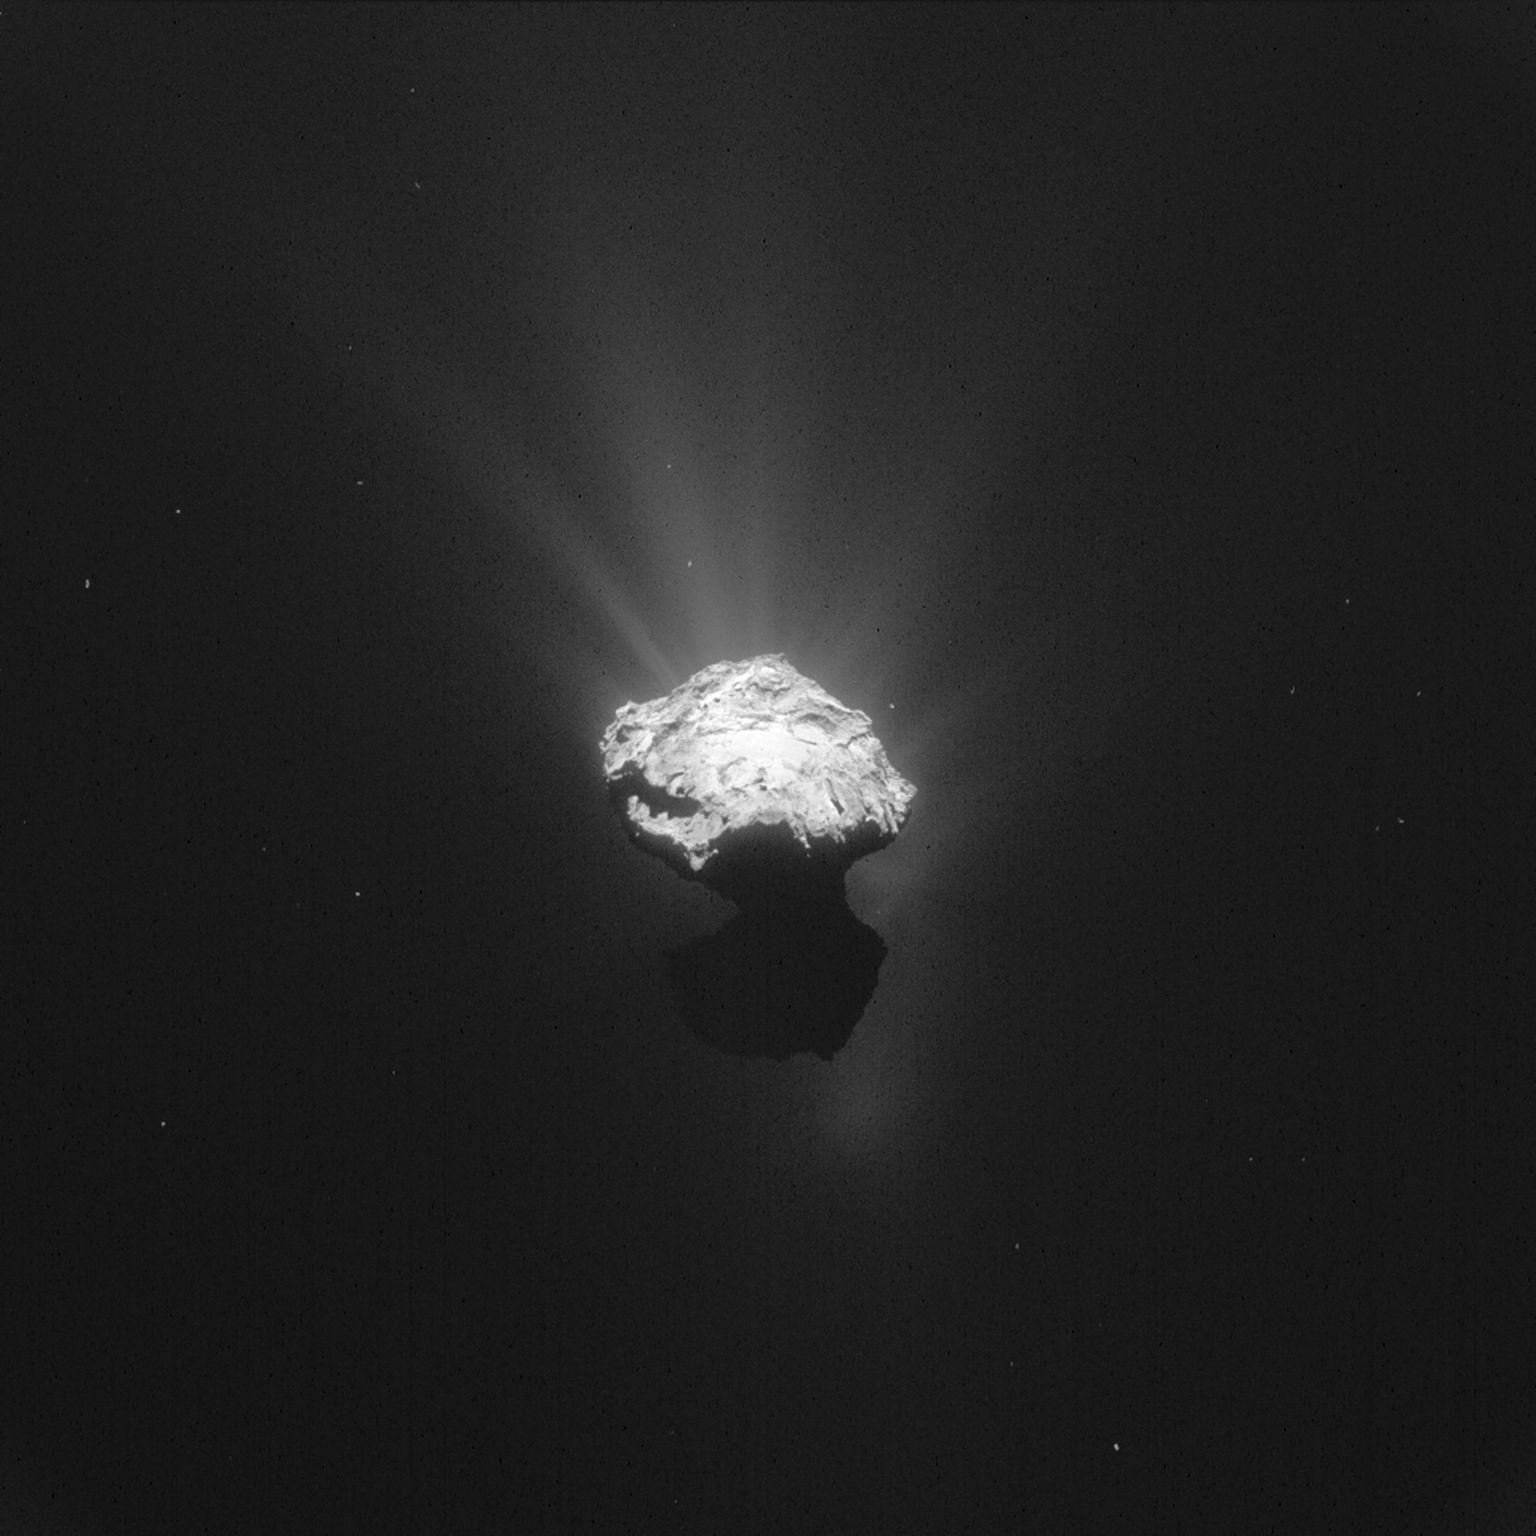 Komeet 67p/Tšurjumov-Gerasimenko.